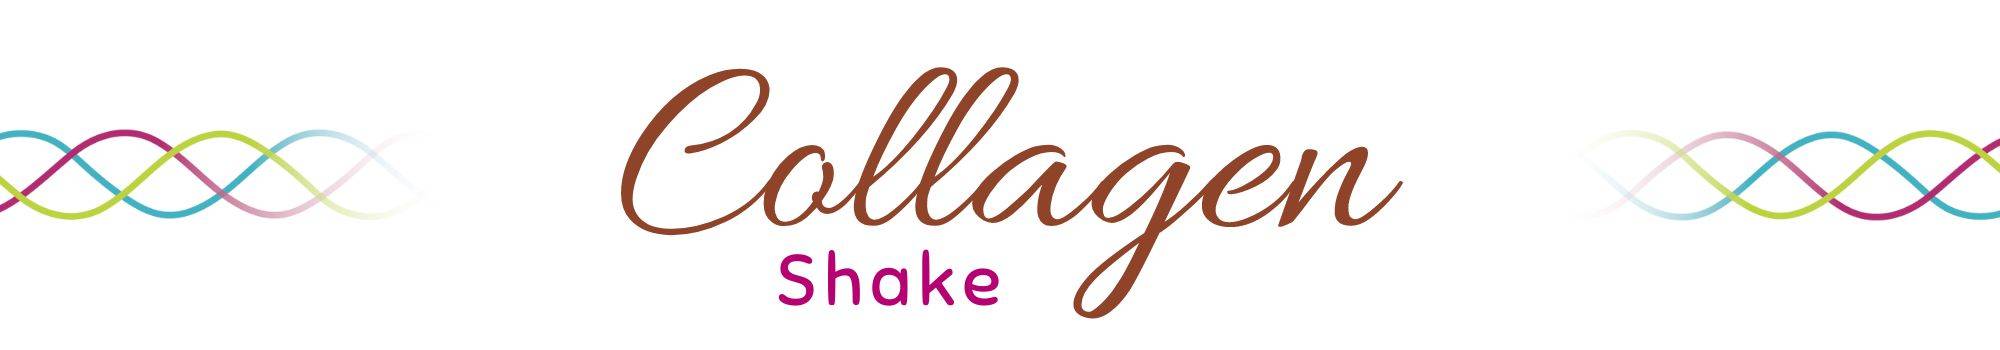 Collagen shake